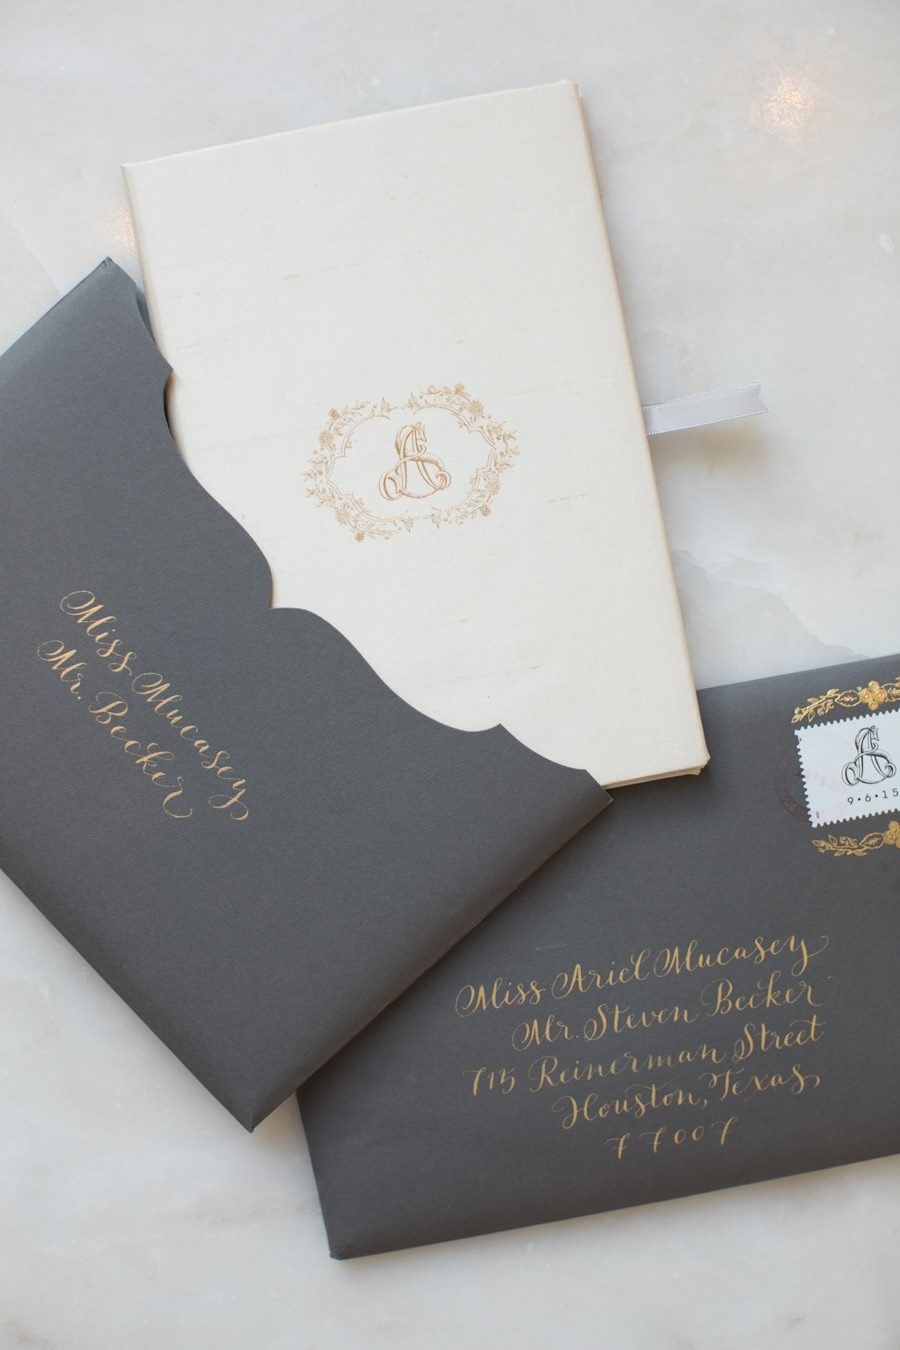 82 Ariel Stiven Wedding Invitation Marriage Cards Wedding